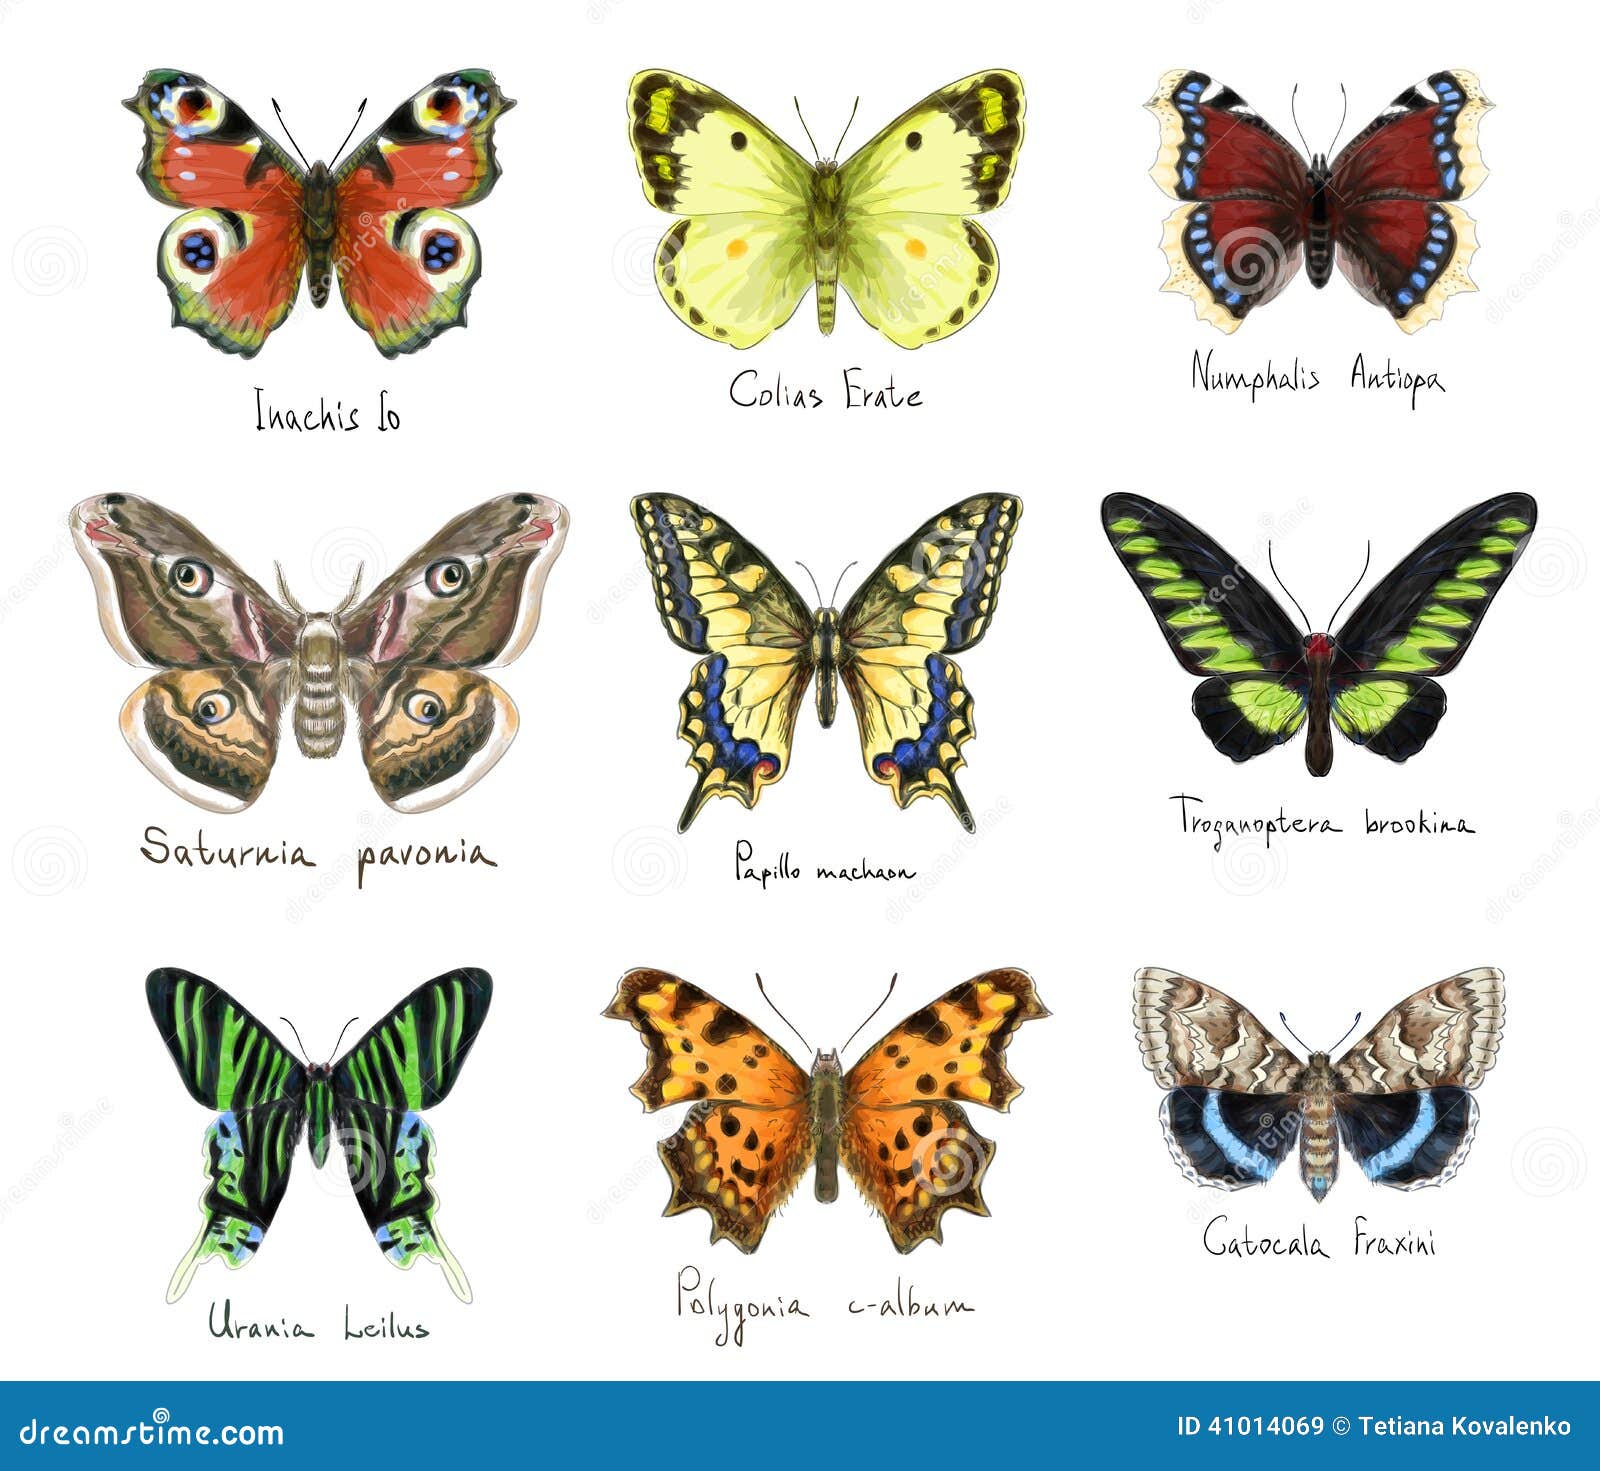 Какие имена бабочек. Название бабочек. Названия бабочек по алфавиту. Породы бабочек и их названия. Имена бабочек.